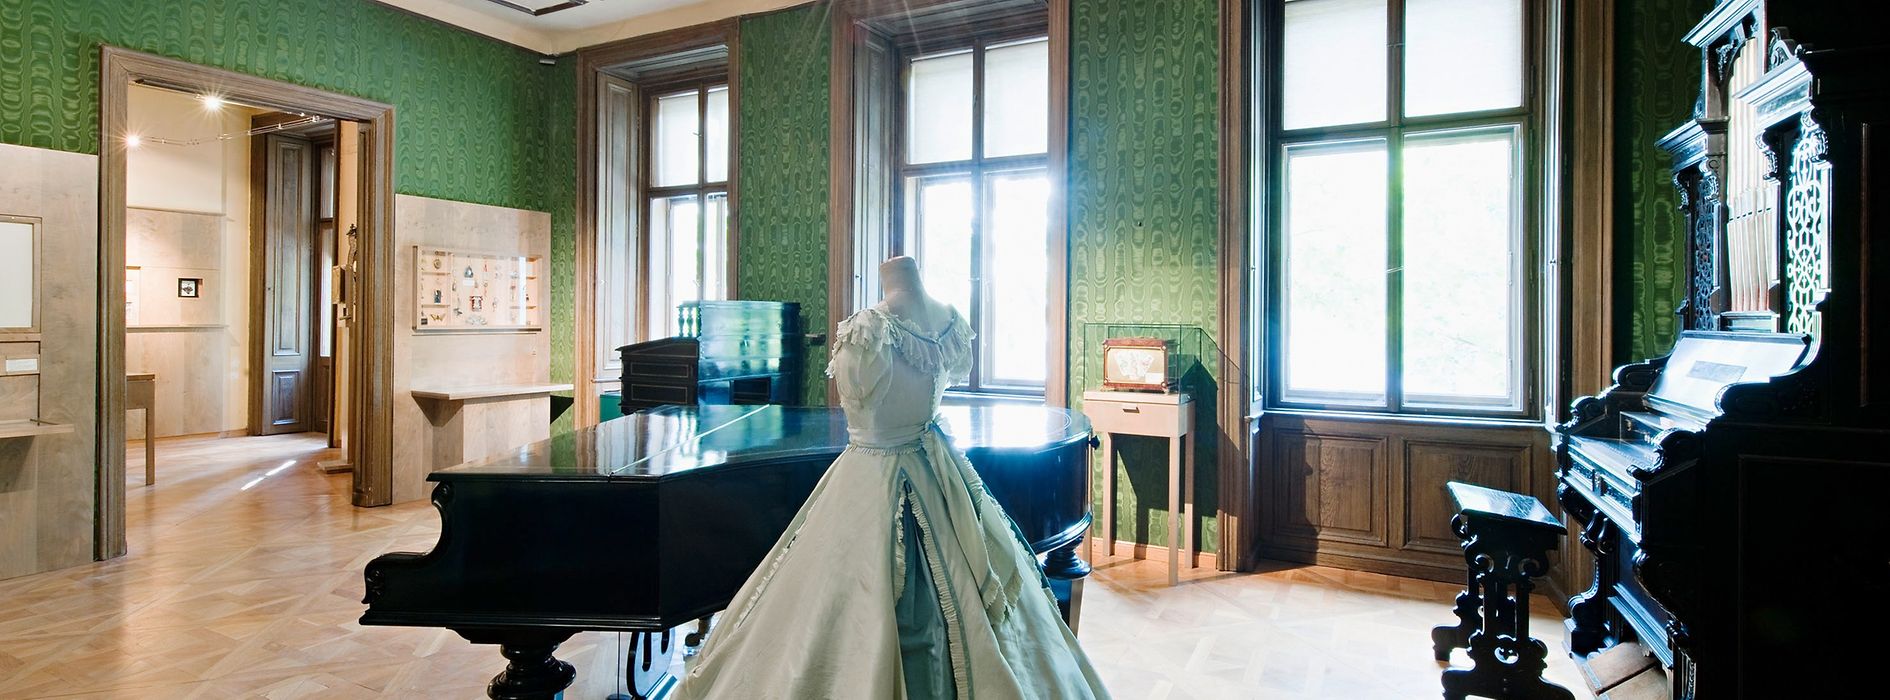 Johann Strauss Wohnung, grün tapezierter Raum mit Flügel, Kleiderpuppe